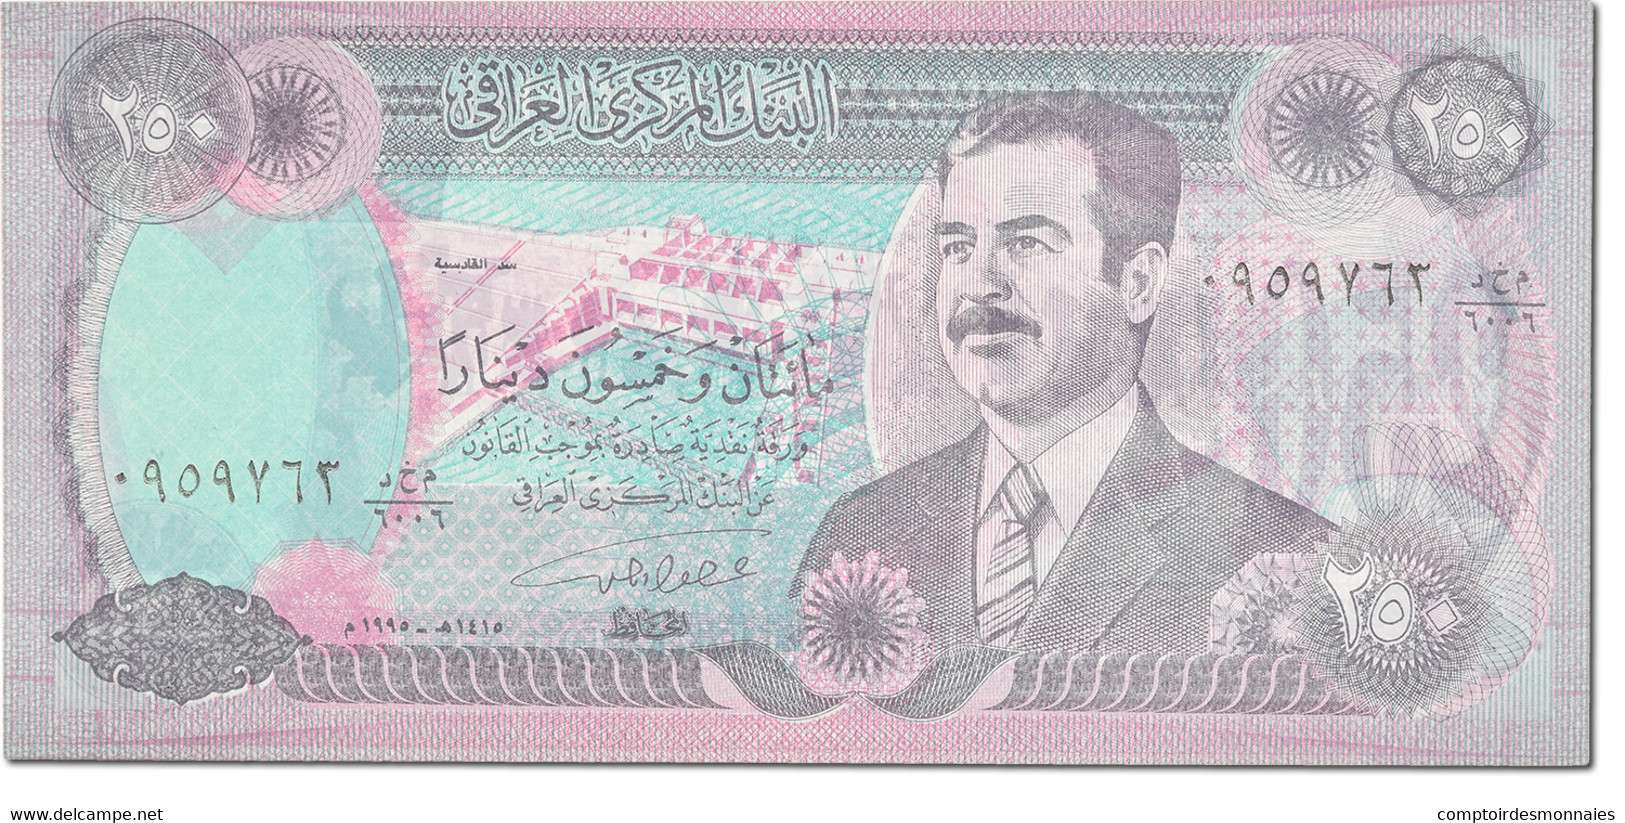 Billet, Iraq, 250 Dinars, 1995, KM:85a1, NEUF - Iraq